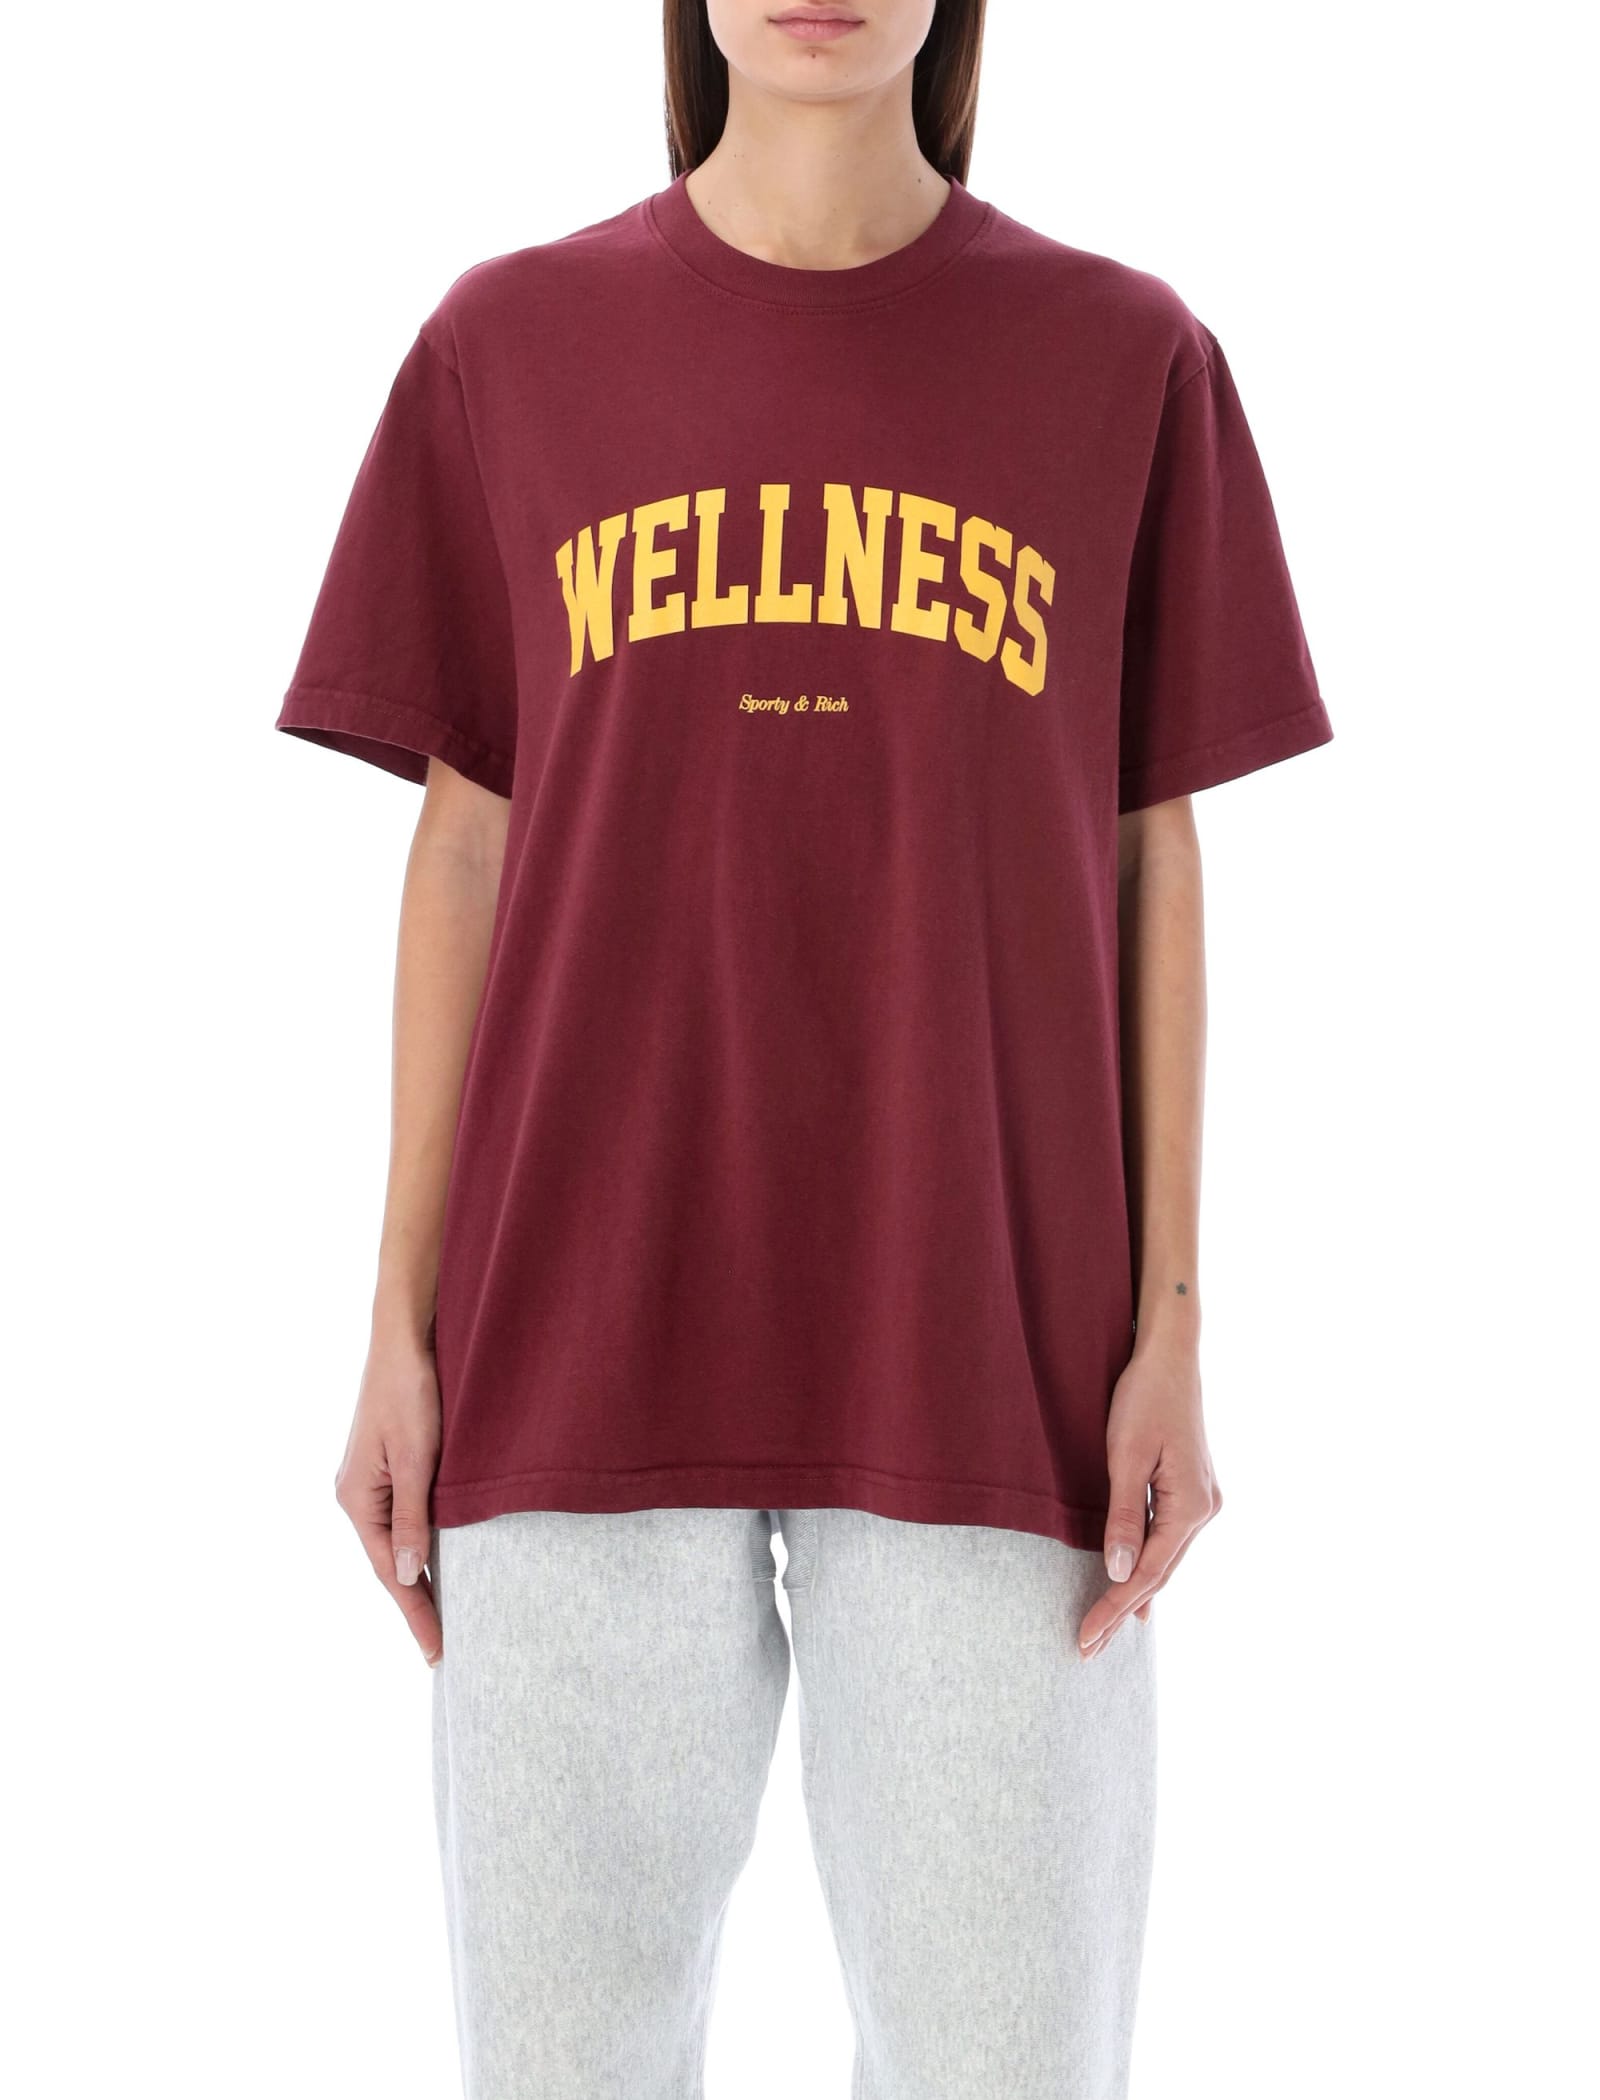 Sporty & Rich Wellness Ivy T-shirt